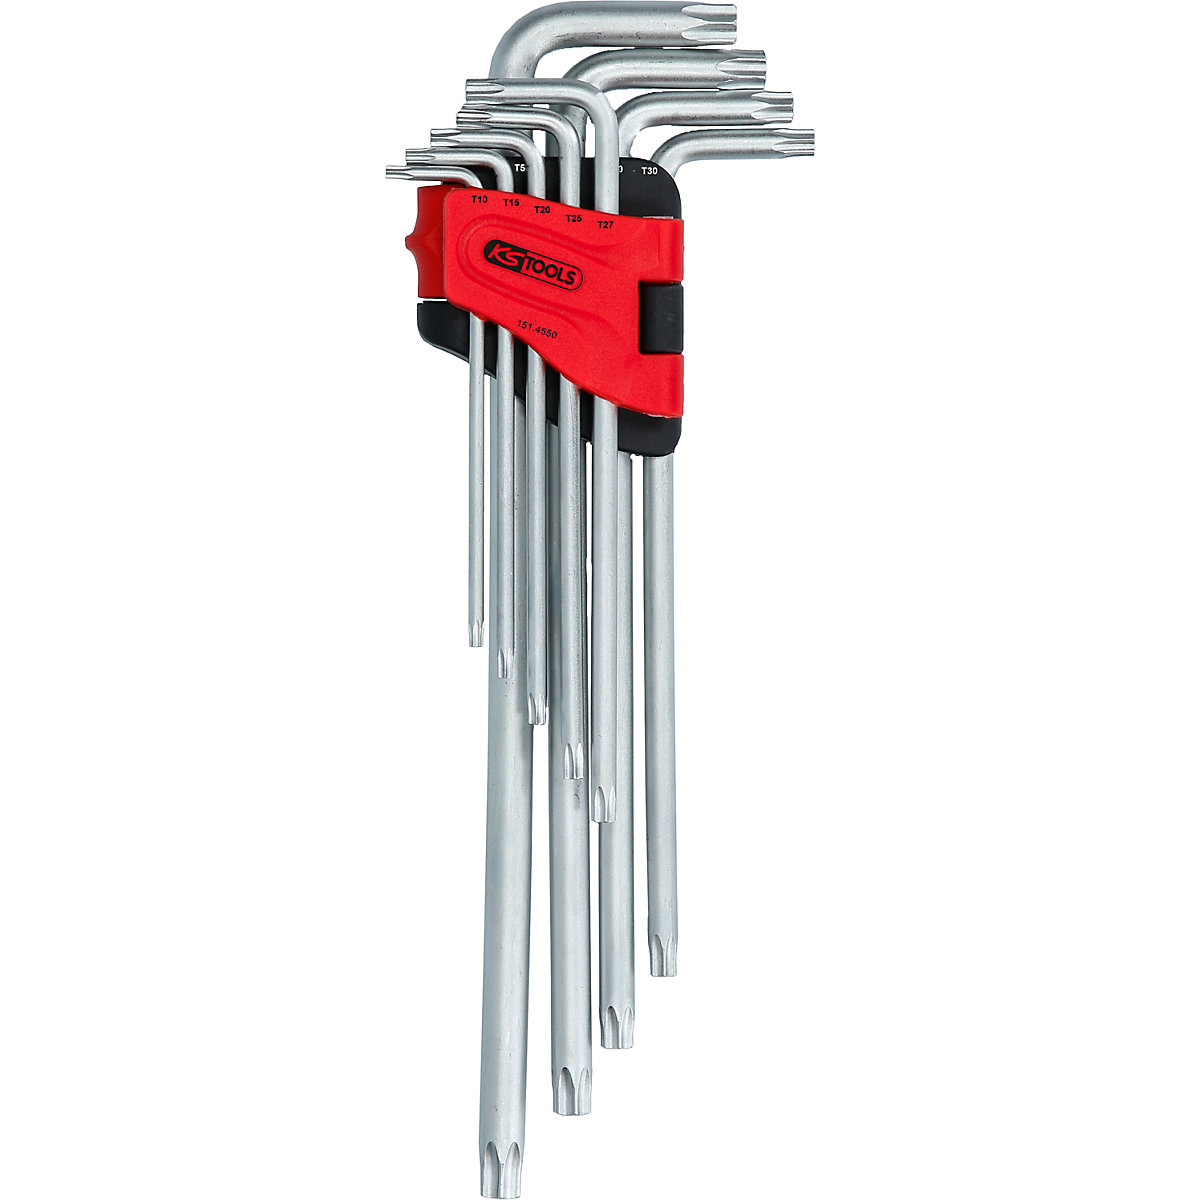 Angle key wrench set, extra long - KS Tools